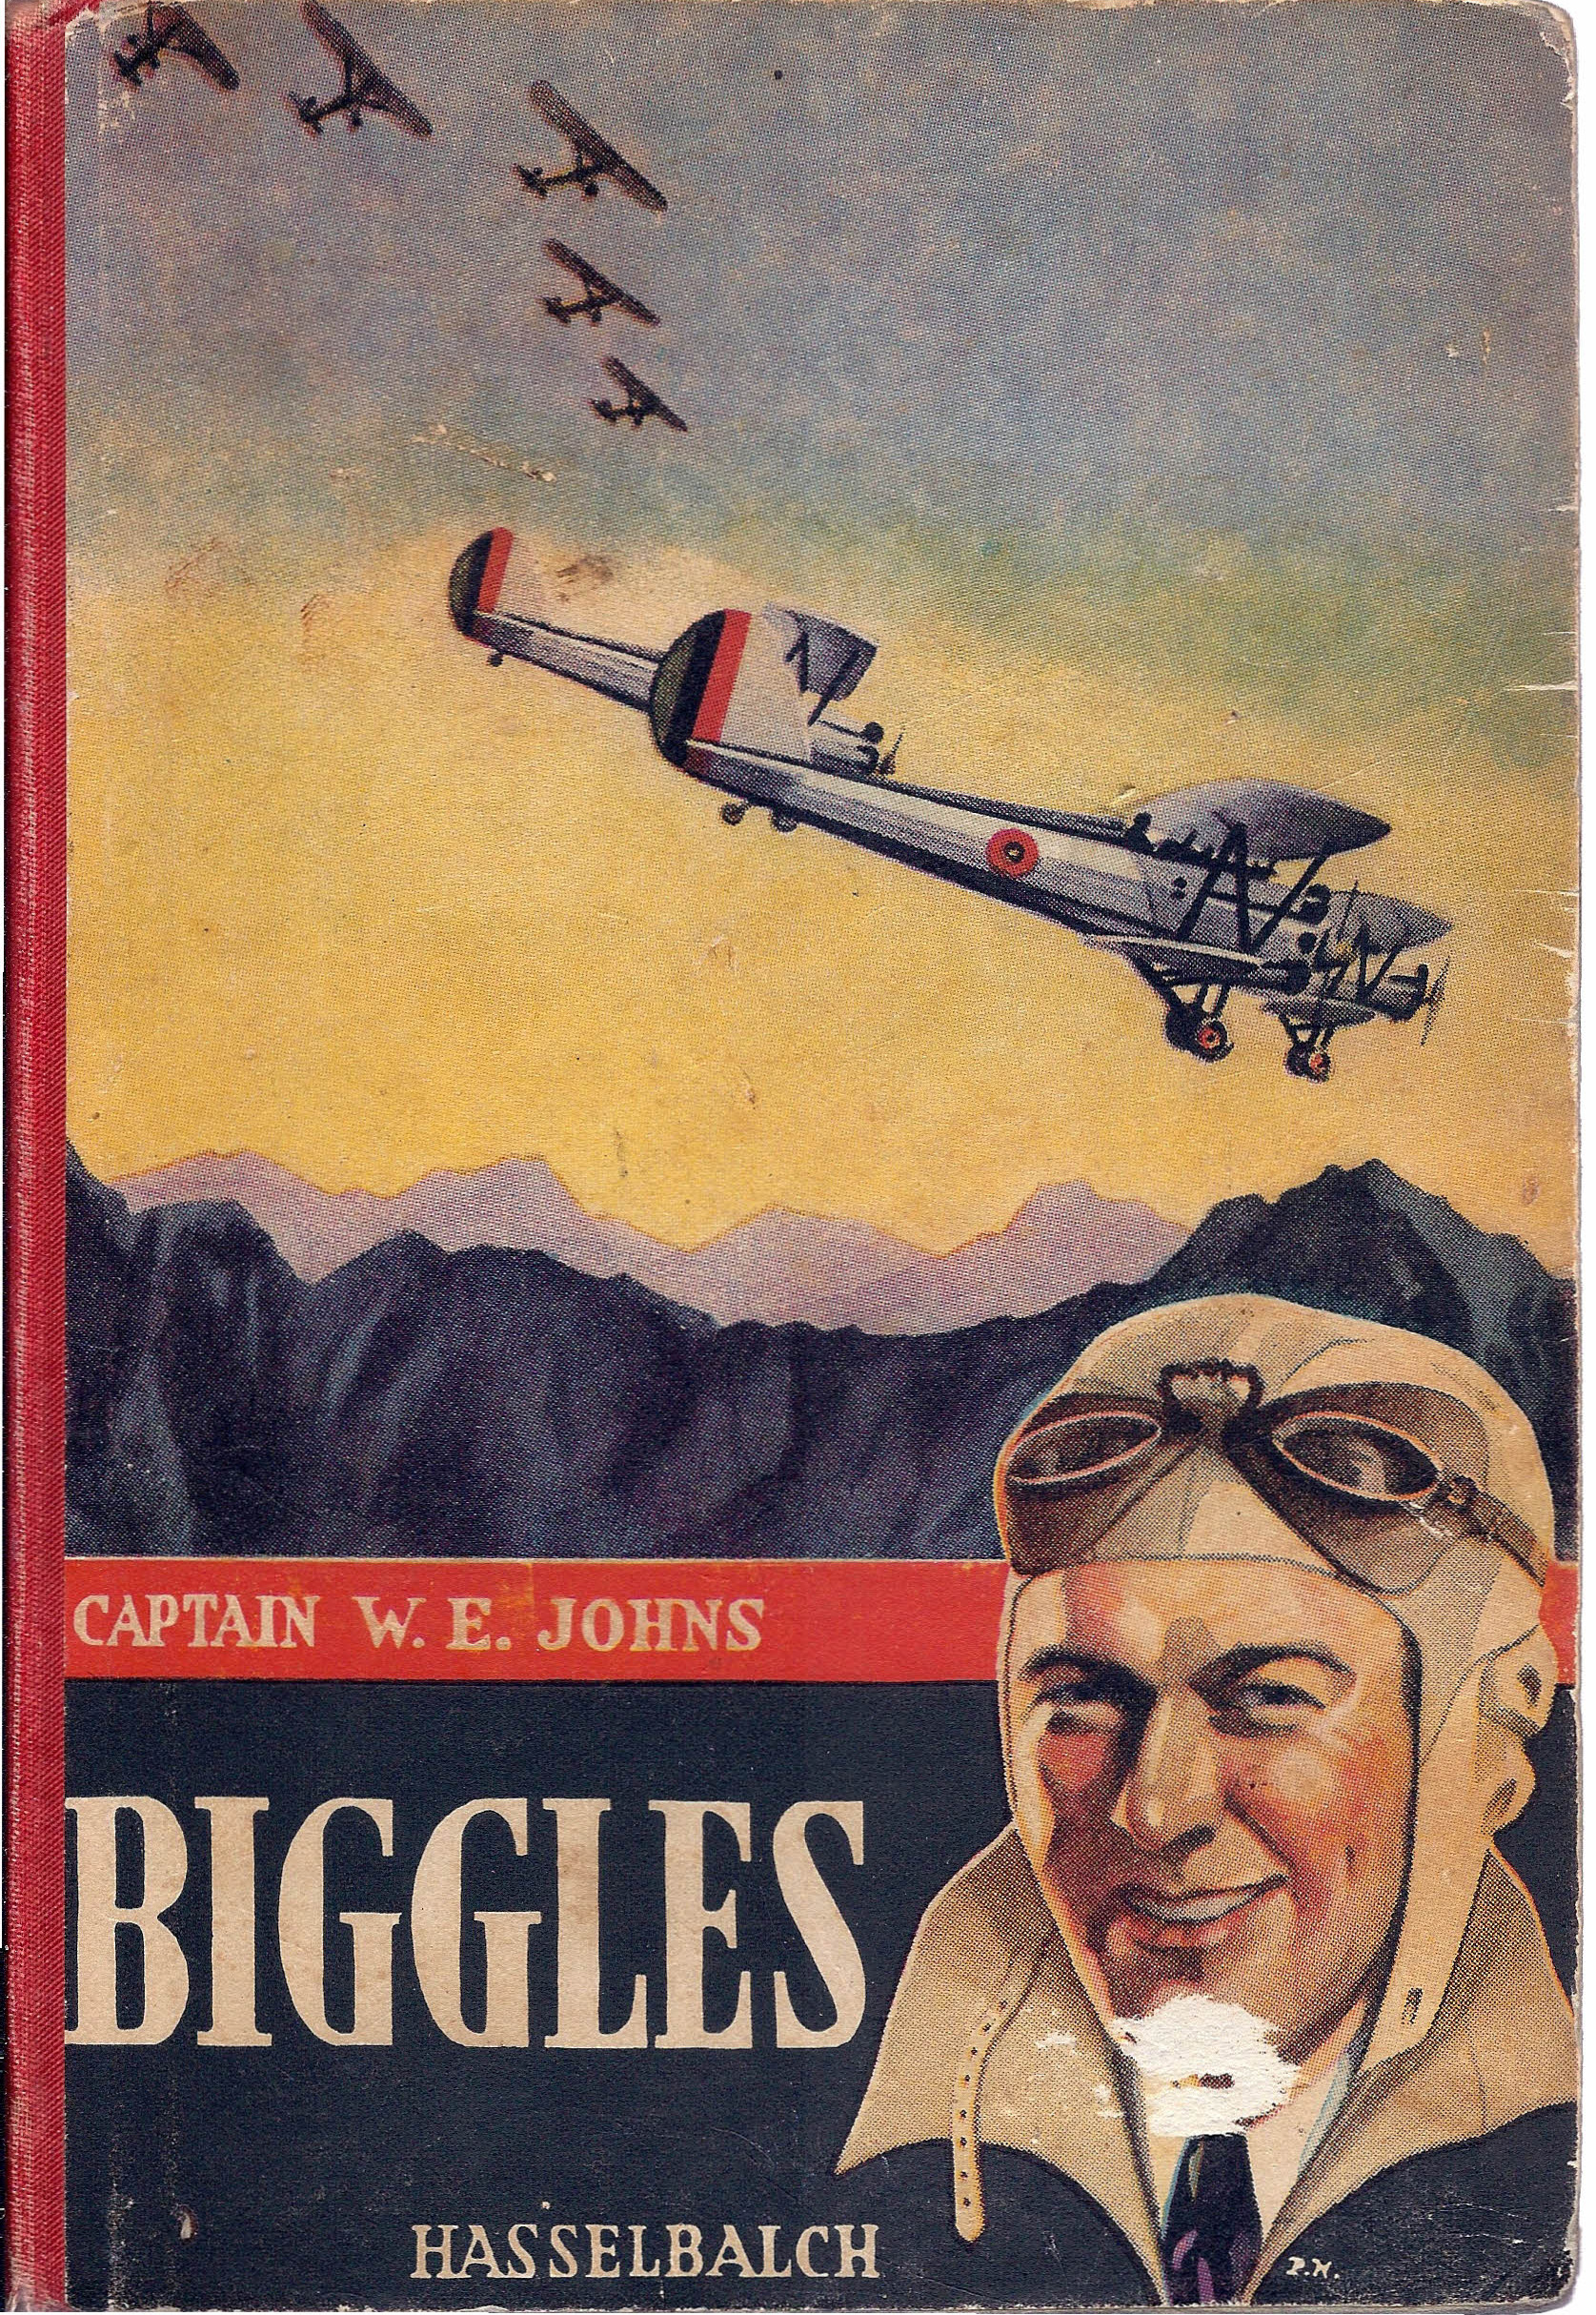 Biggles - W E Johns